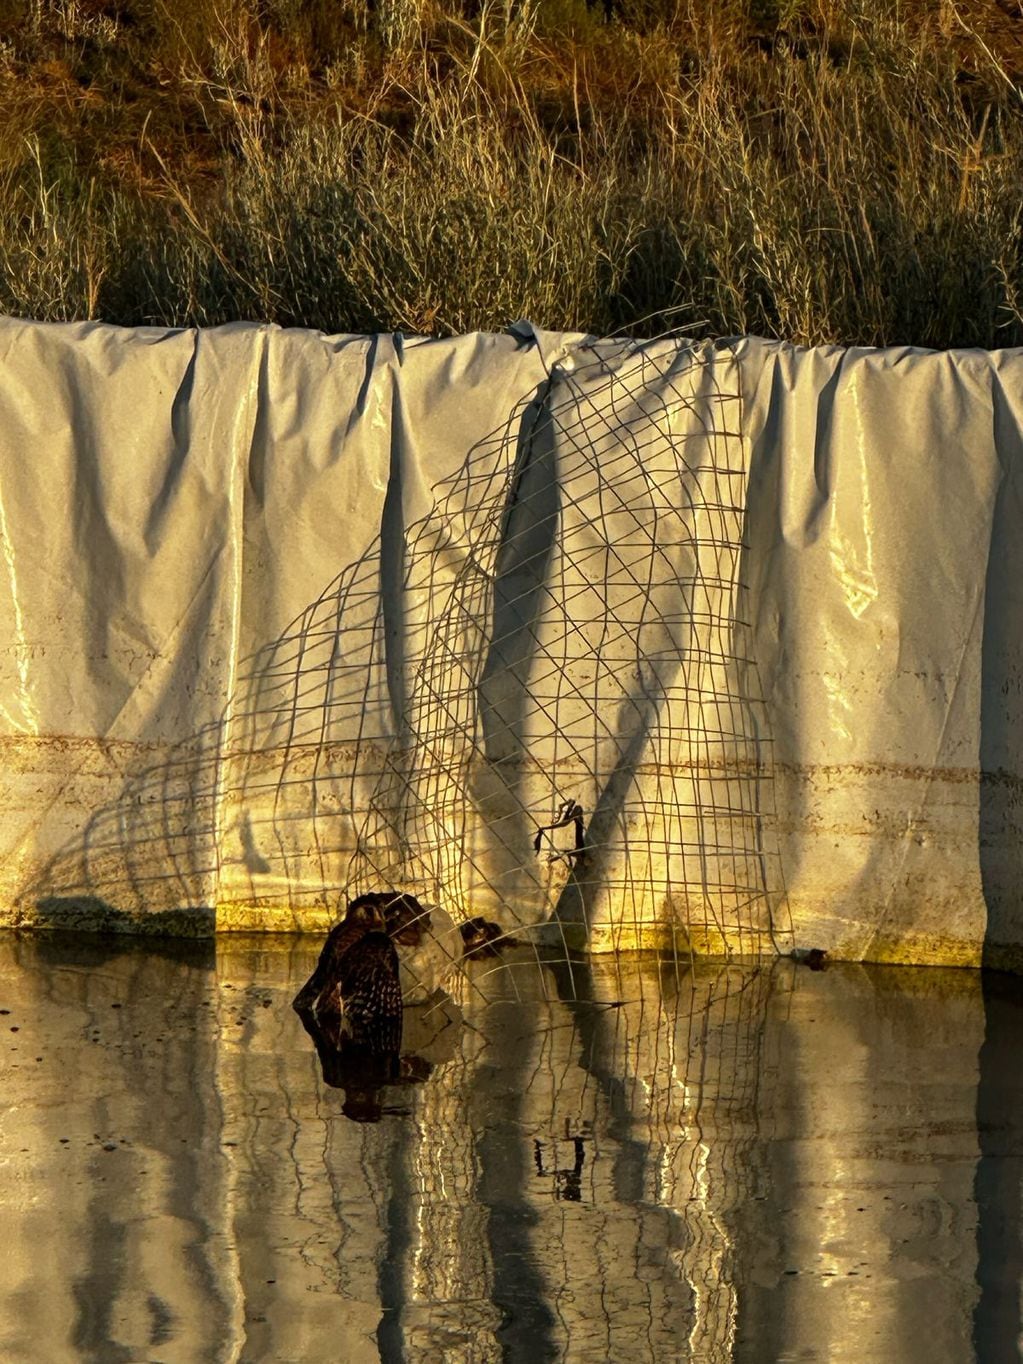 Un halconcito colorado salva su vida gracias a “rampas de escape” instaladas en Mendoza